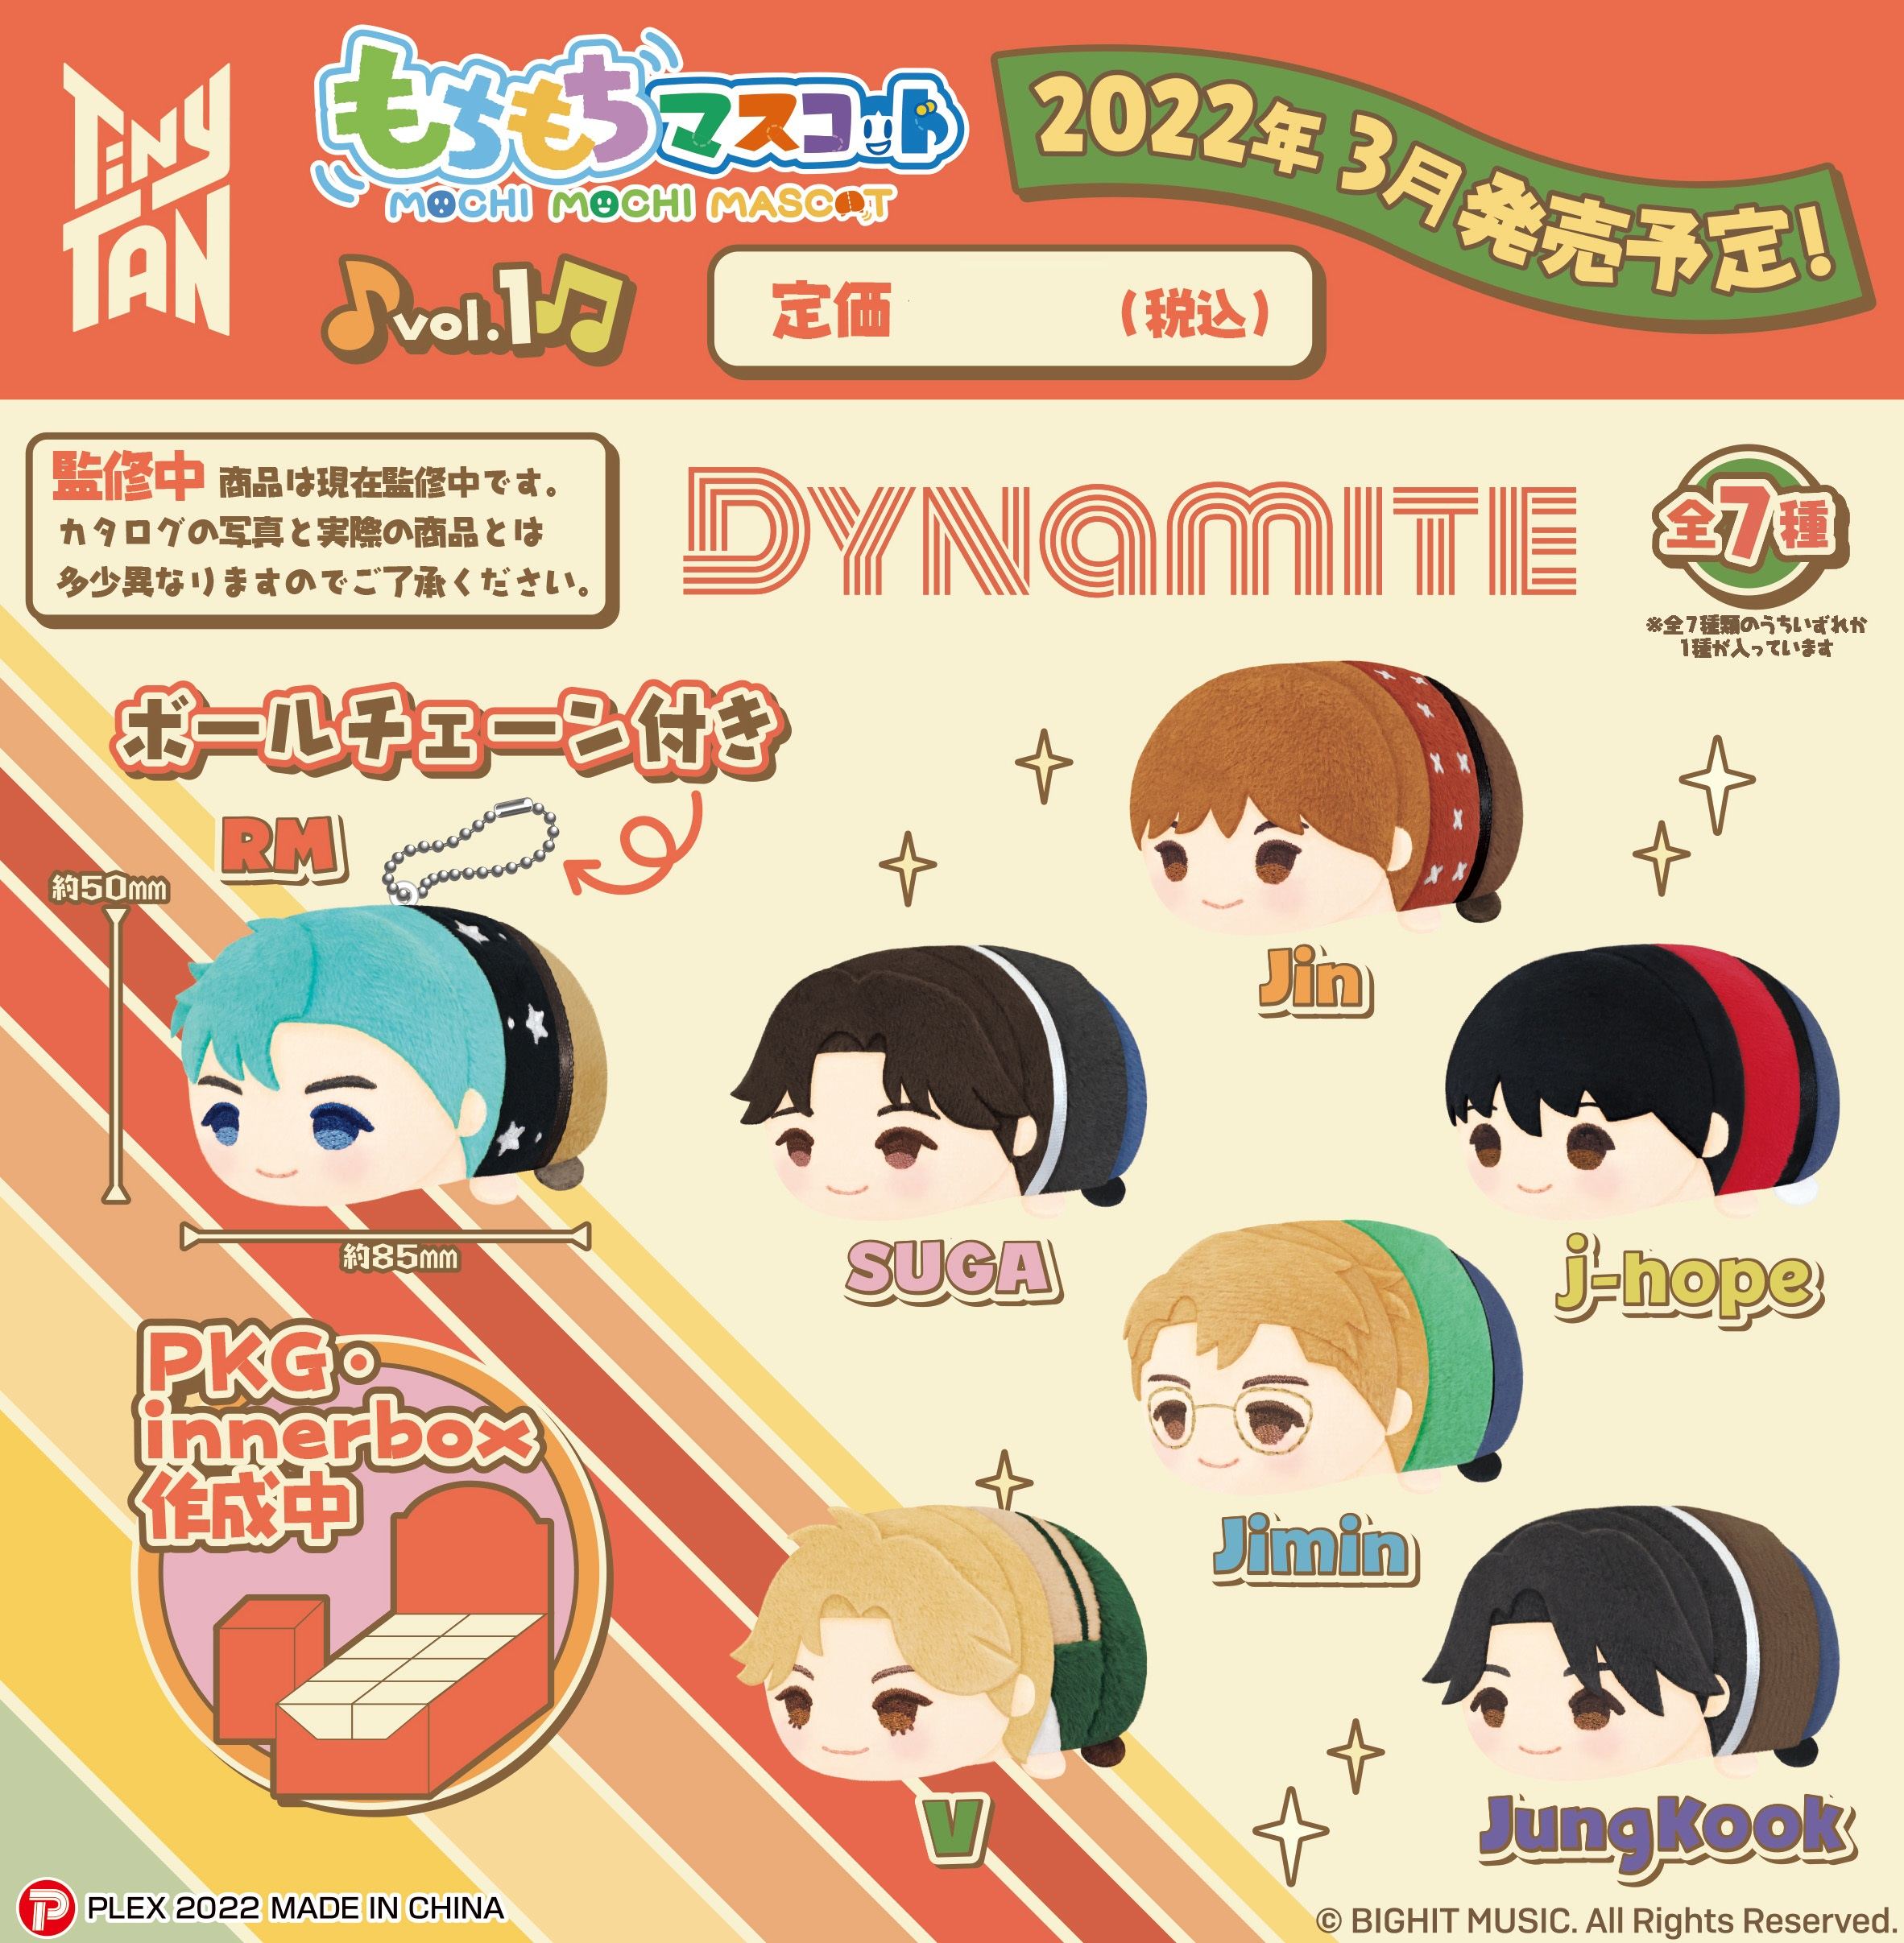 Mochimochi Mascot Tiny TAN Vol. 1 Dynamite Ver. (Set of 7 pieces) Plex